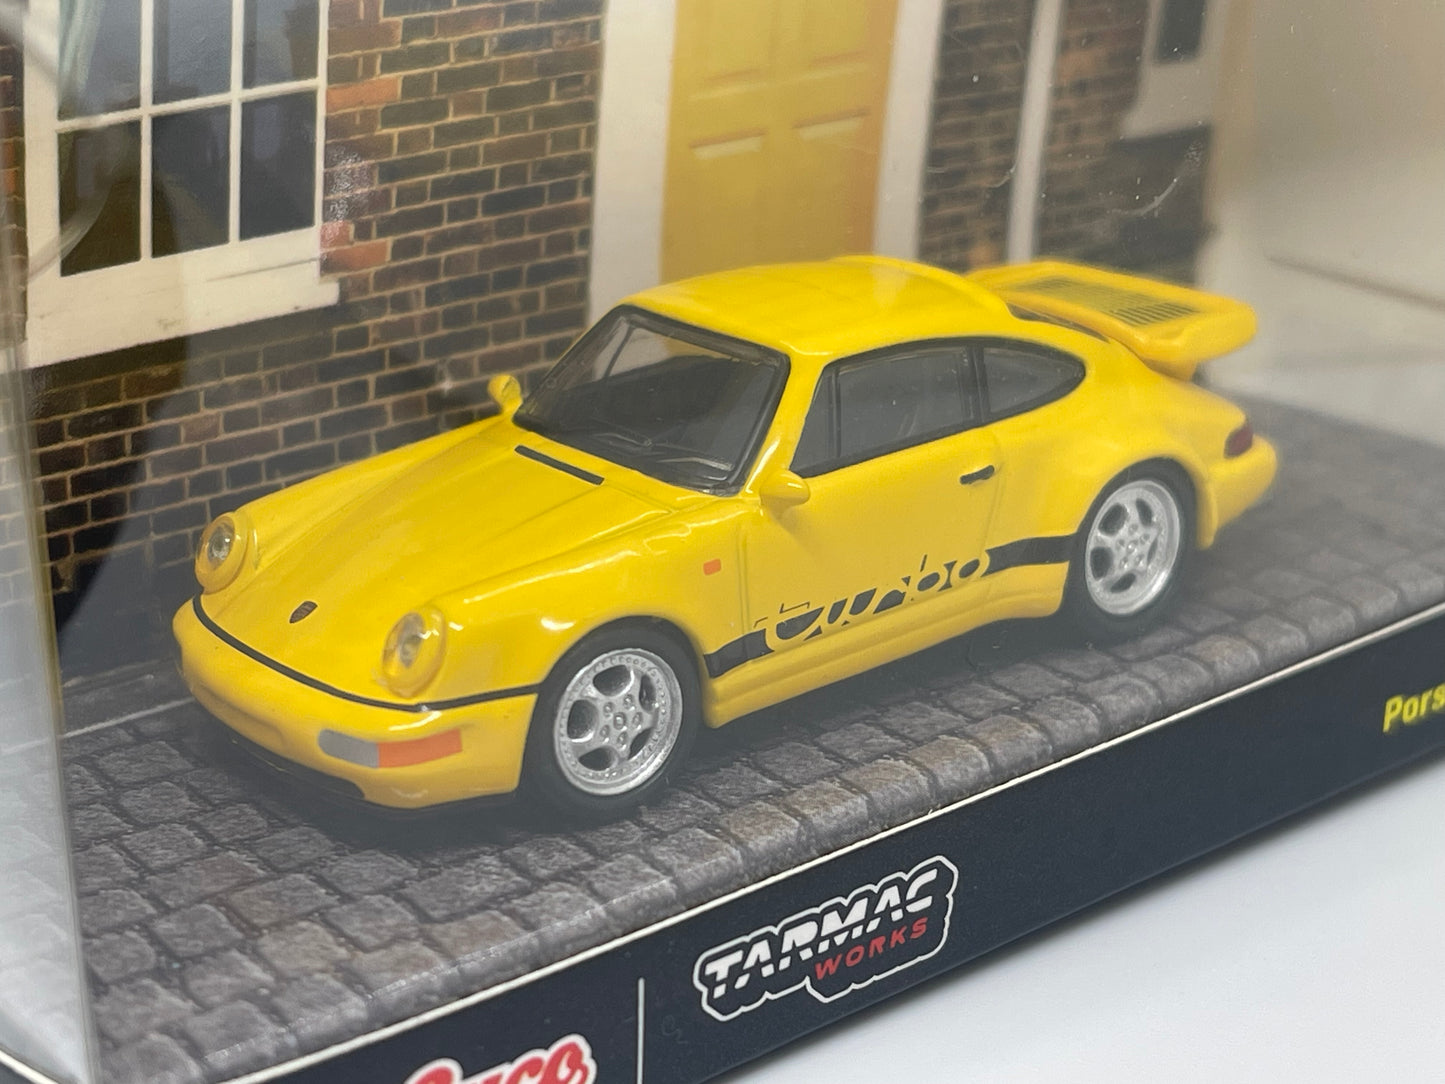 Tarmac Works - Porsche 911 Turbo (Yellow)